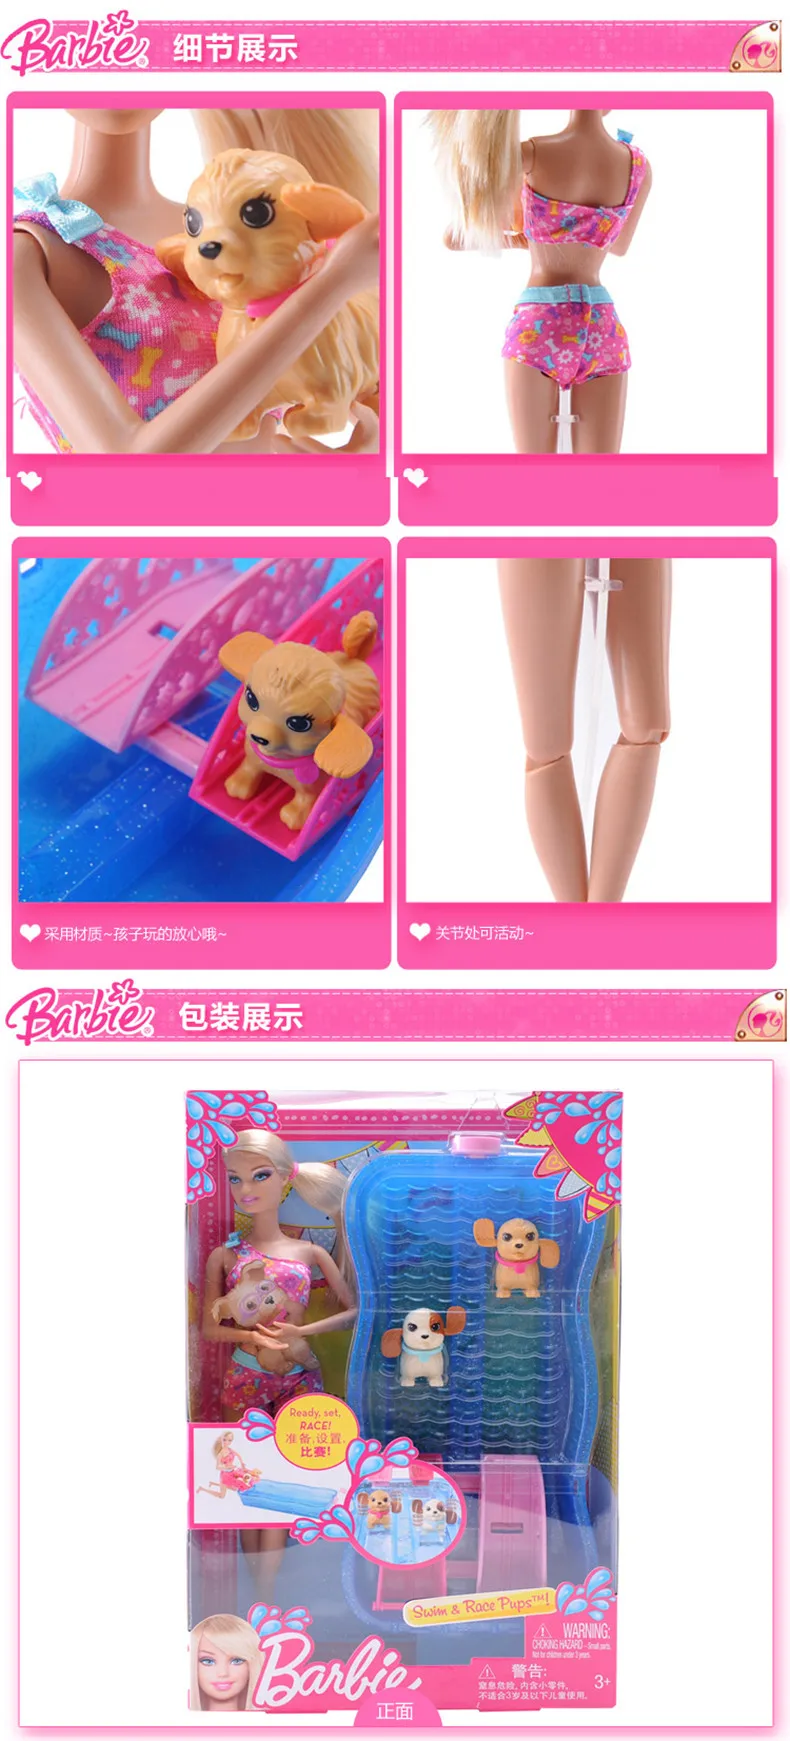 Куклы Барби Плавание и гонки Pups собака Плавание ming игры X8404 одежда принцессы для девочек Новый год Рождественский подарок игрушка